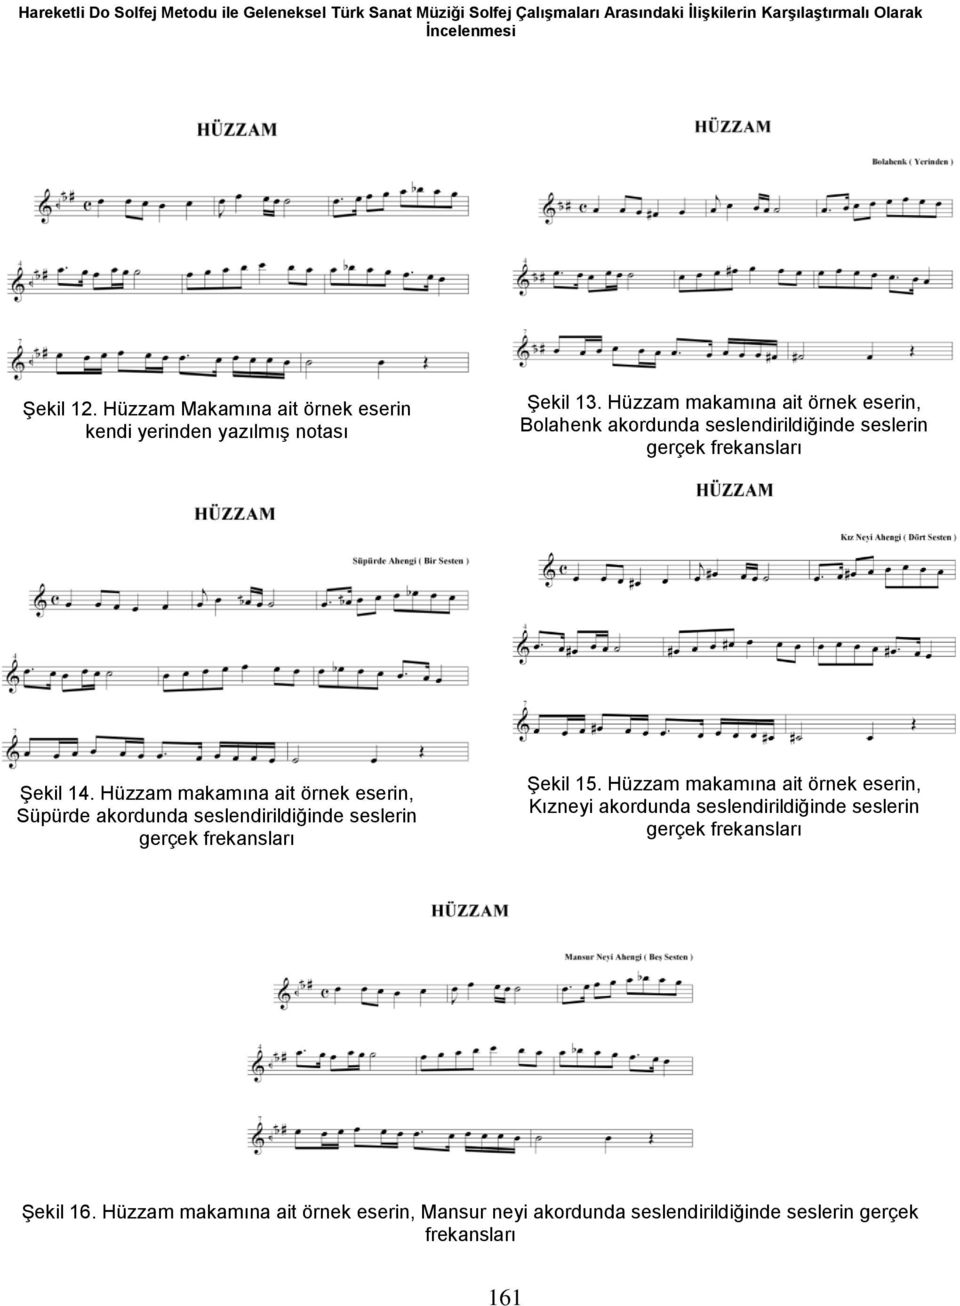 Hüzzam makamına ait örnek eserin, Bolahenk akordunda seslendirildiğinde seslerin Şekil 14.